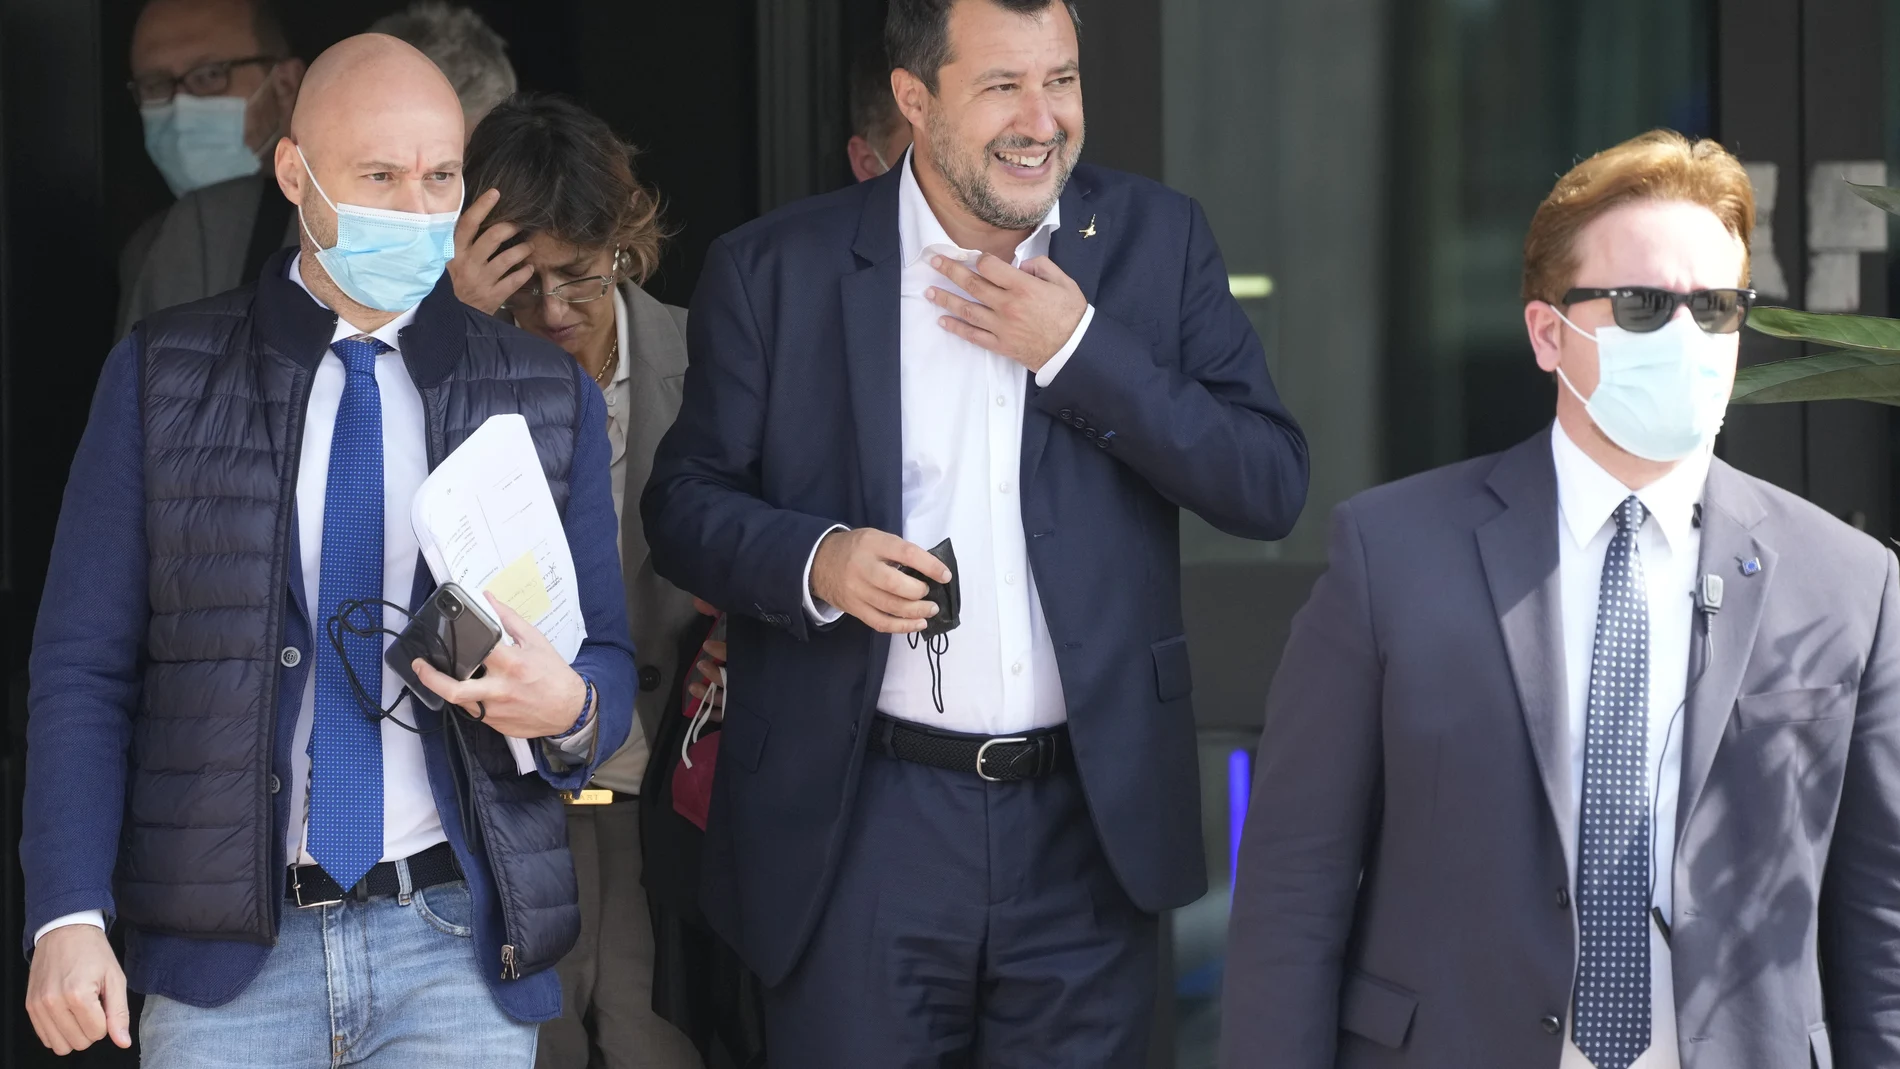 El líder de la Liga, Matteo Salvini, tras comparecer en la corte de Palermo